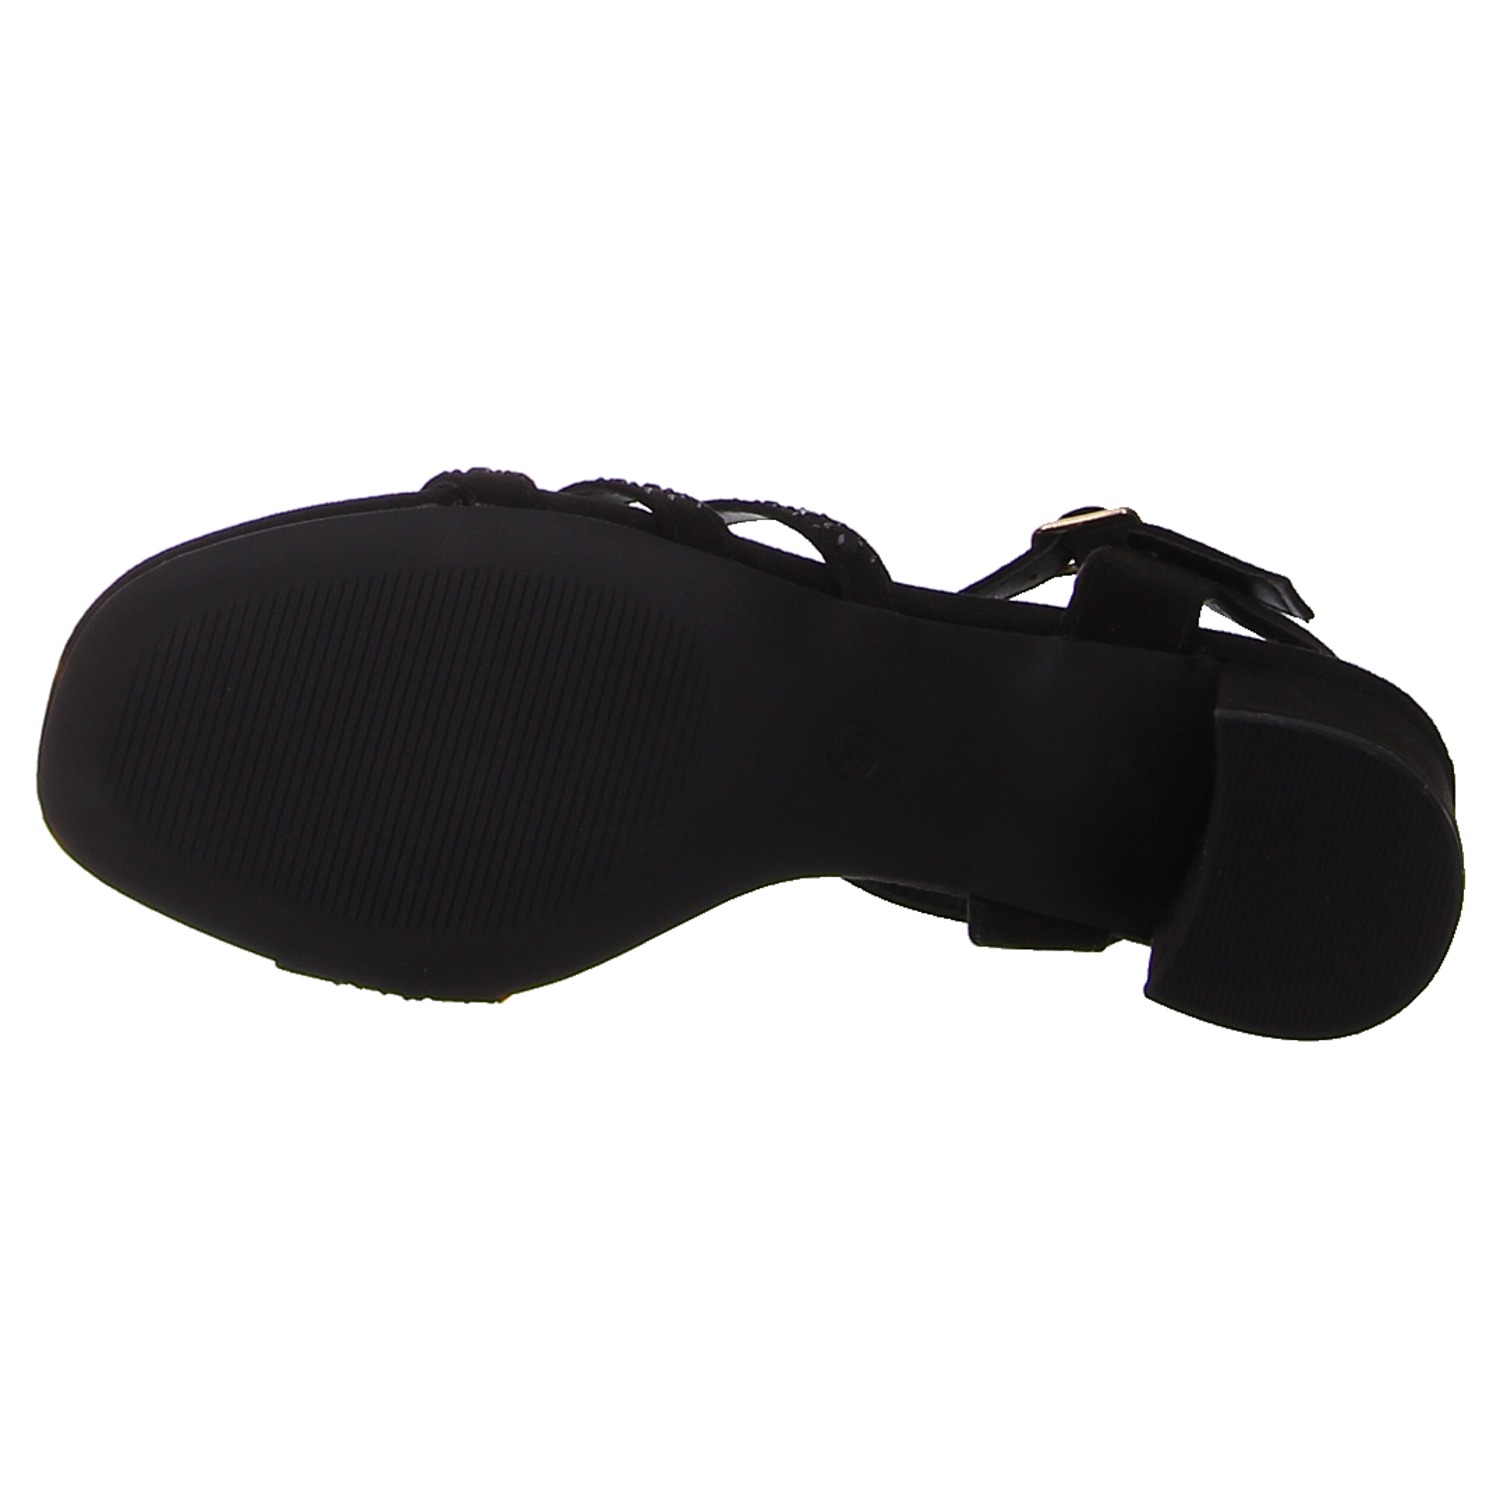 Idana-Schuhe elegant 282 742 black